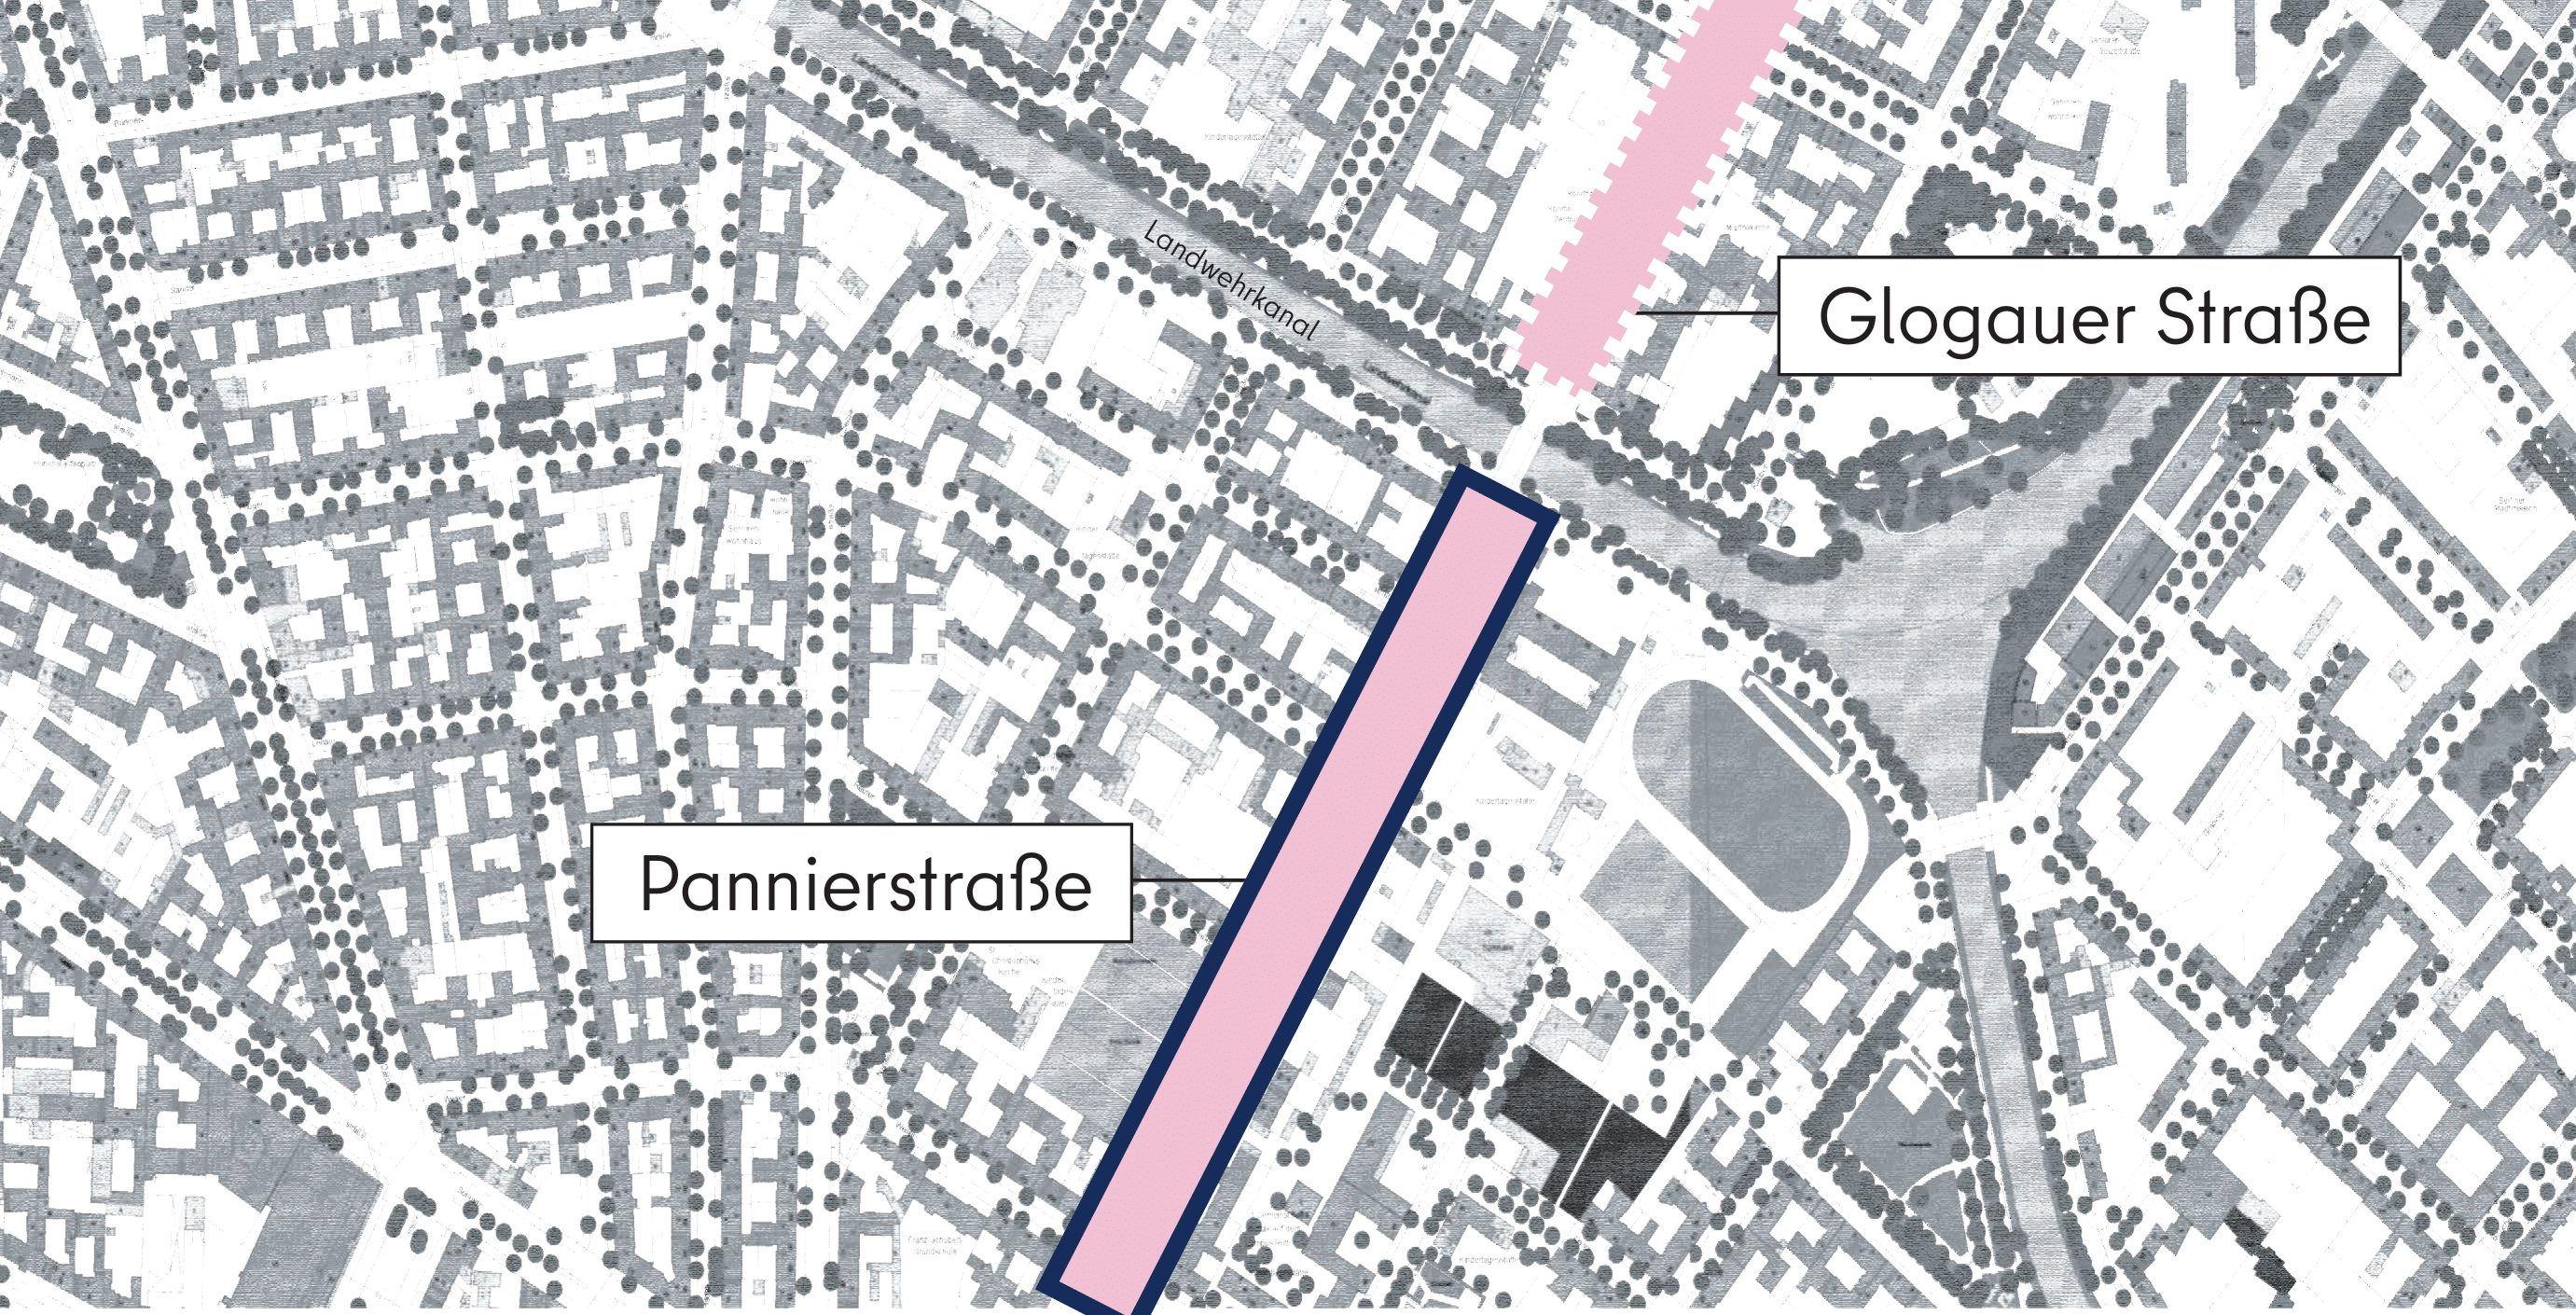 Dieses Bild zeigt eine grafische Darstellung des Abschnitts Pannierstraße aus der Vogelperspektive